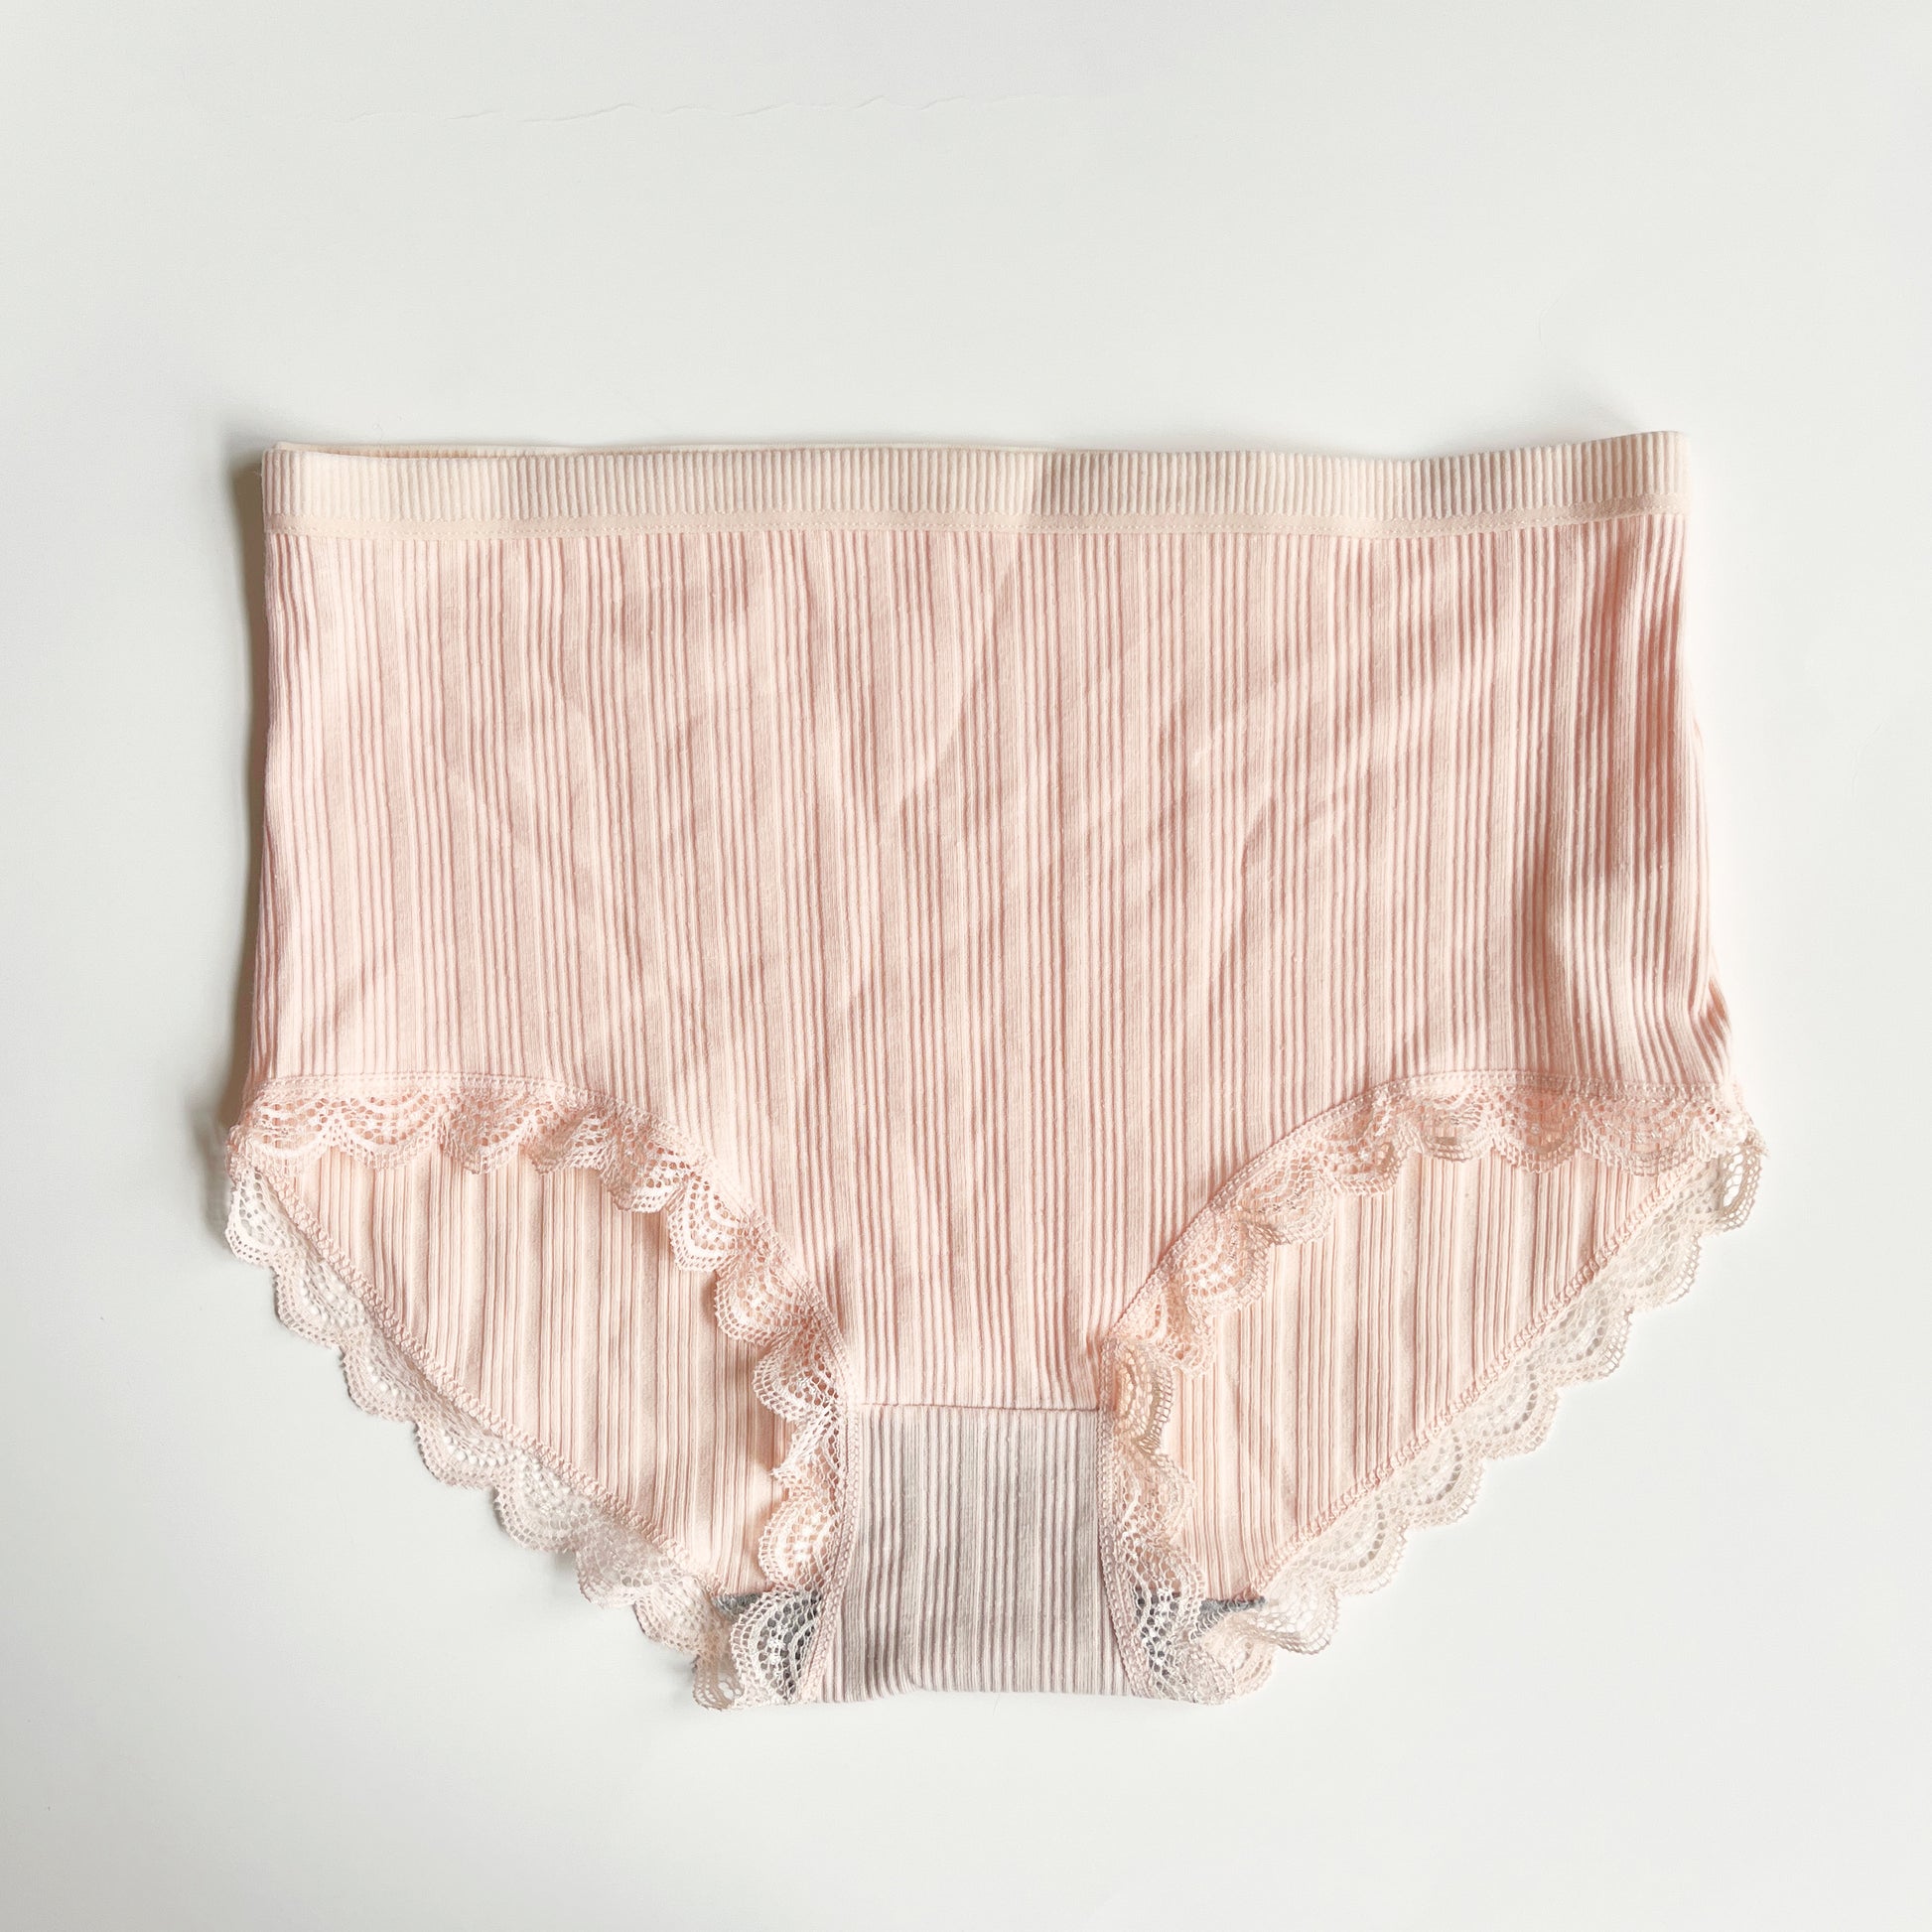 Ladies High Waist Knickers Women's Cotton Briefs Underwear Full